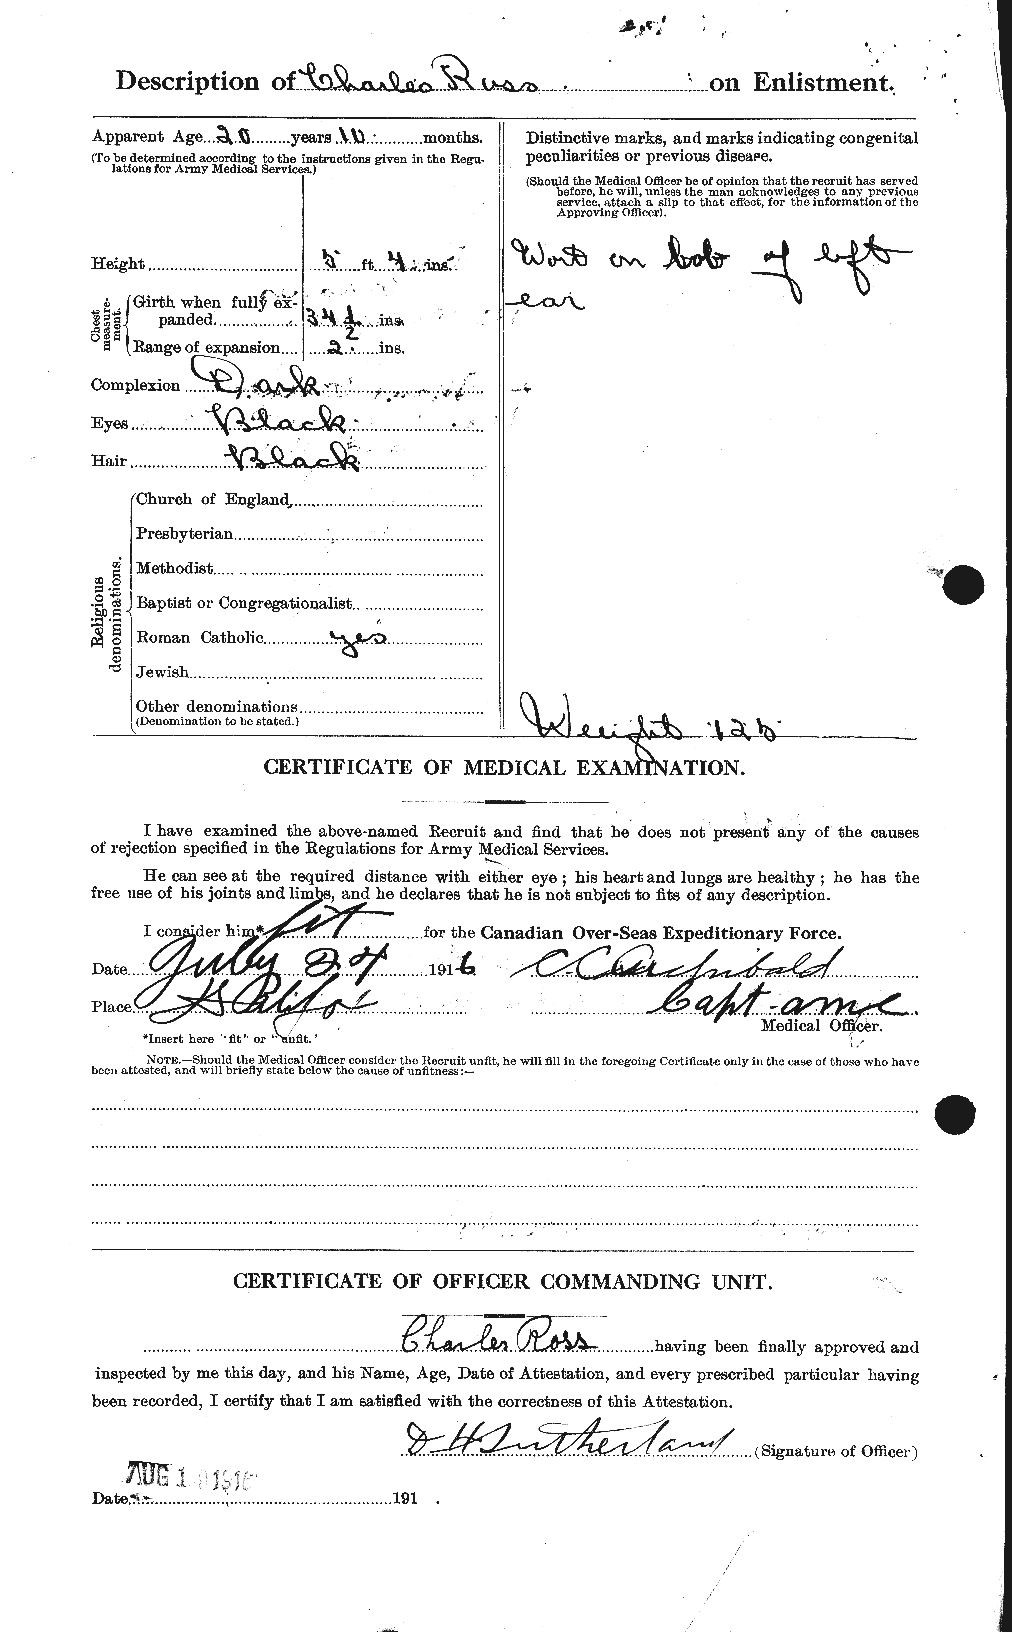 Dossiers du Personnel de la Première Guerre mondiale - CEC 612743b